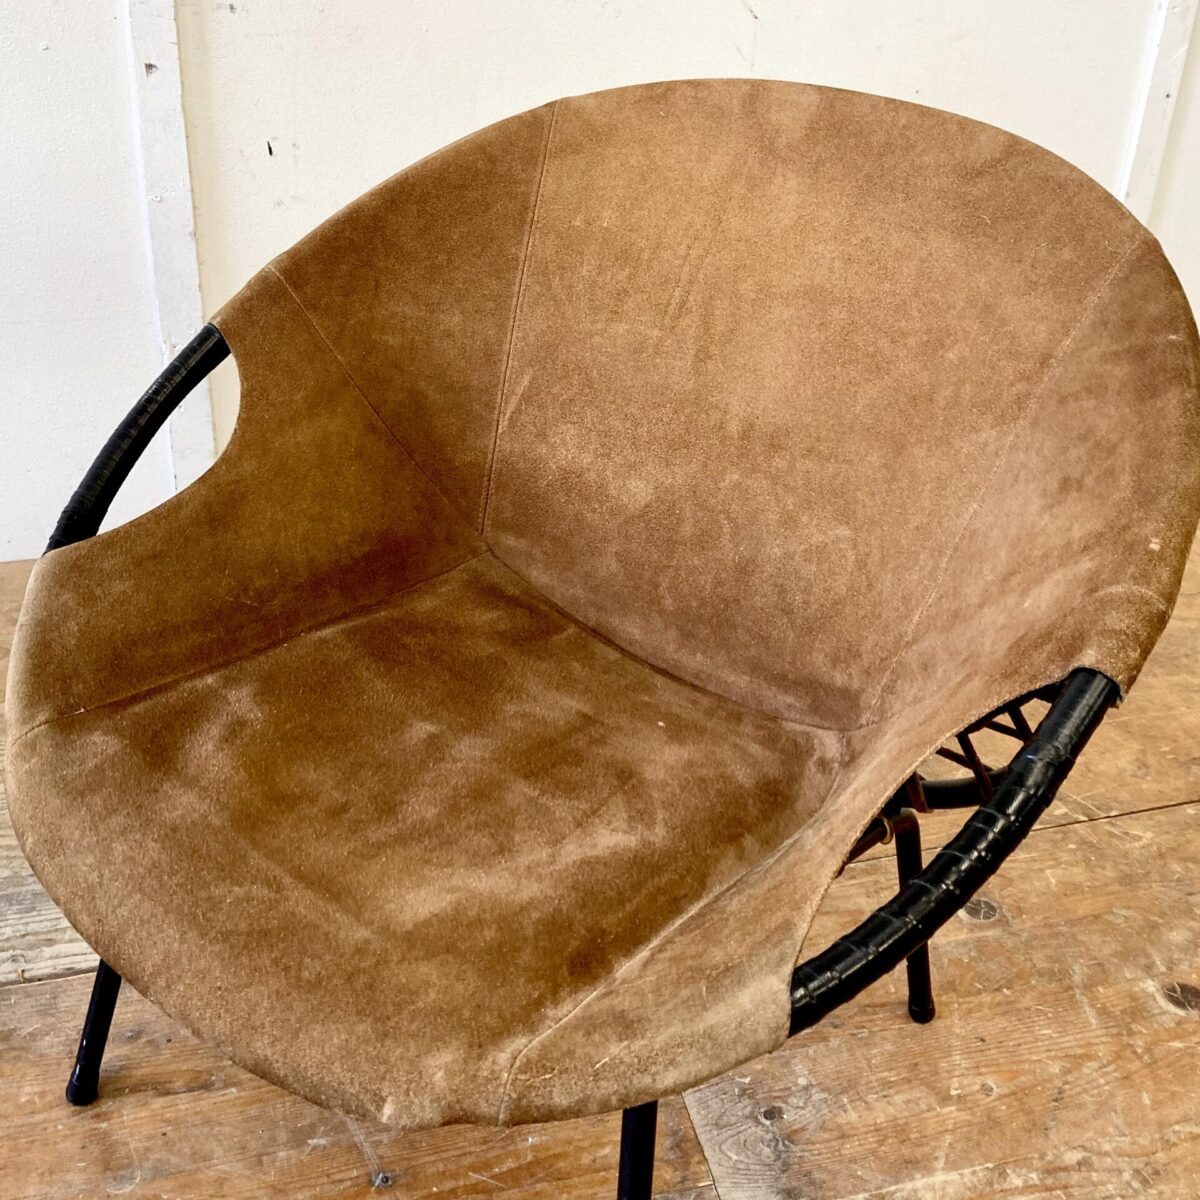 Deuxieme.shop midcentury Easy Chair Ledersessel. Wildleder Sessel von Lusch & Co aus den 60er Jahren. Das Leder instinktiv gutem Zustand, leichte Alterspatina. Die Armlehnen müssten mal neu gewickelt werden. 